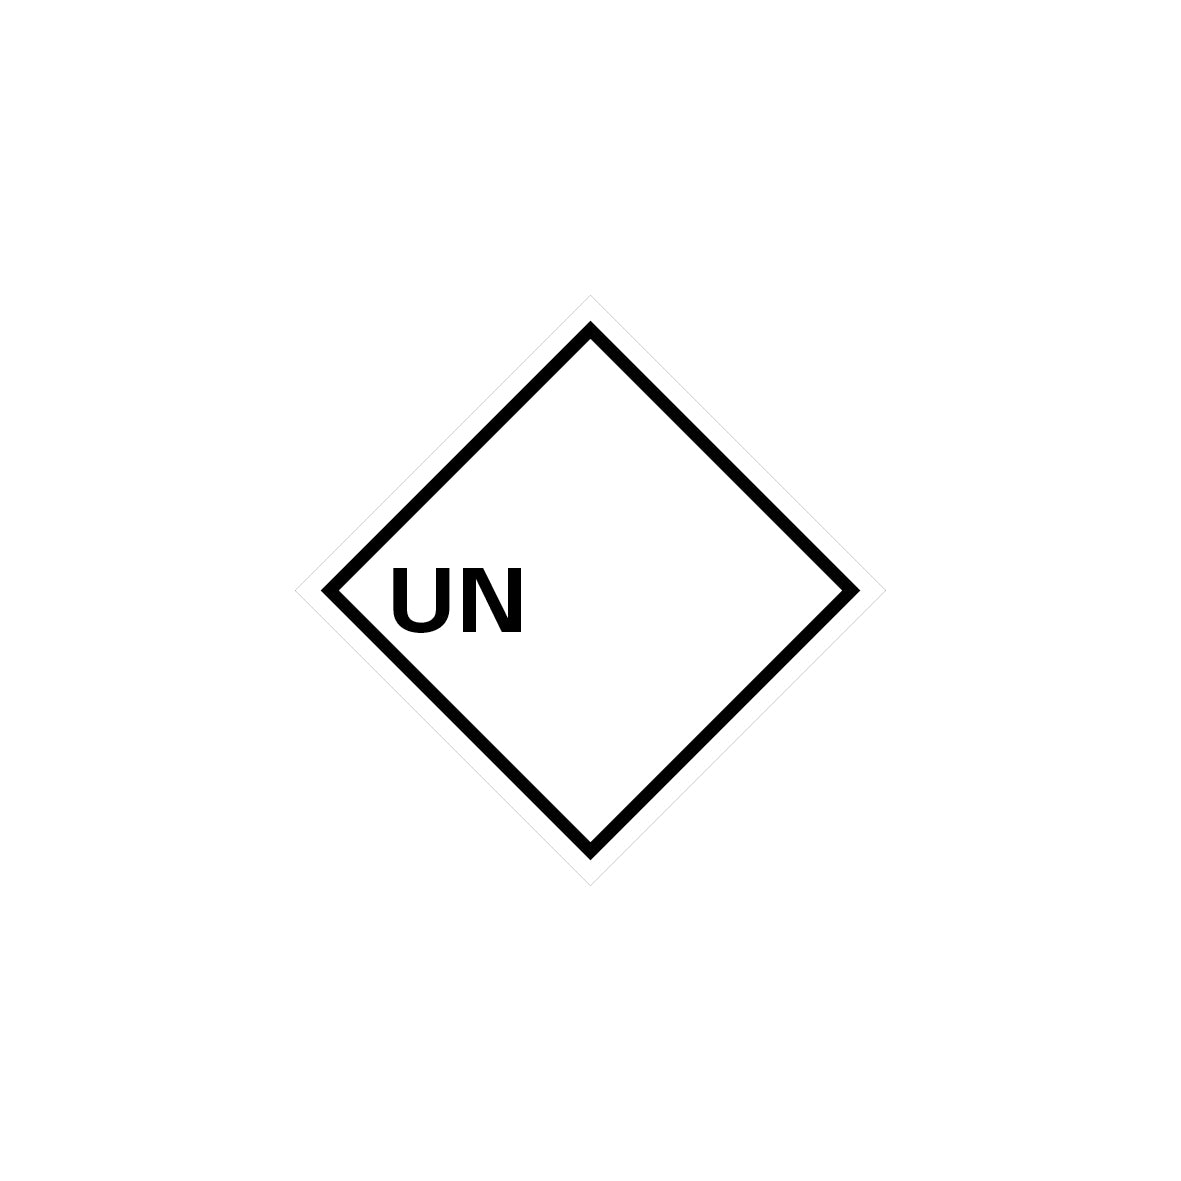 Gefahrgut UN, 5.0175, 100 x 100 mm,  UN zum Selbstbeschriften